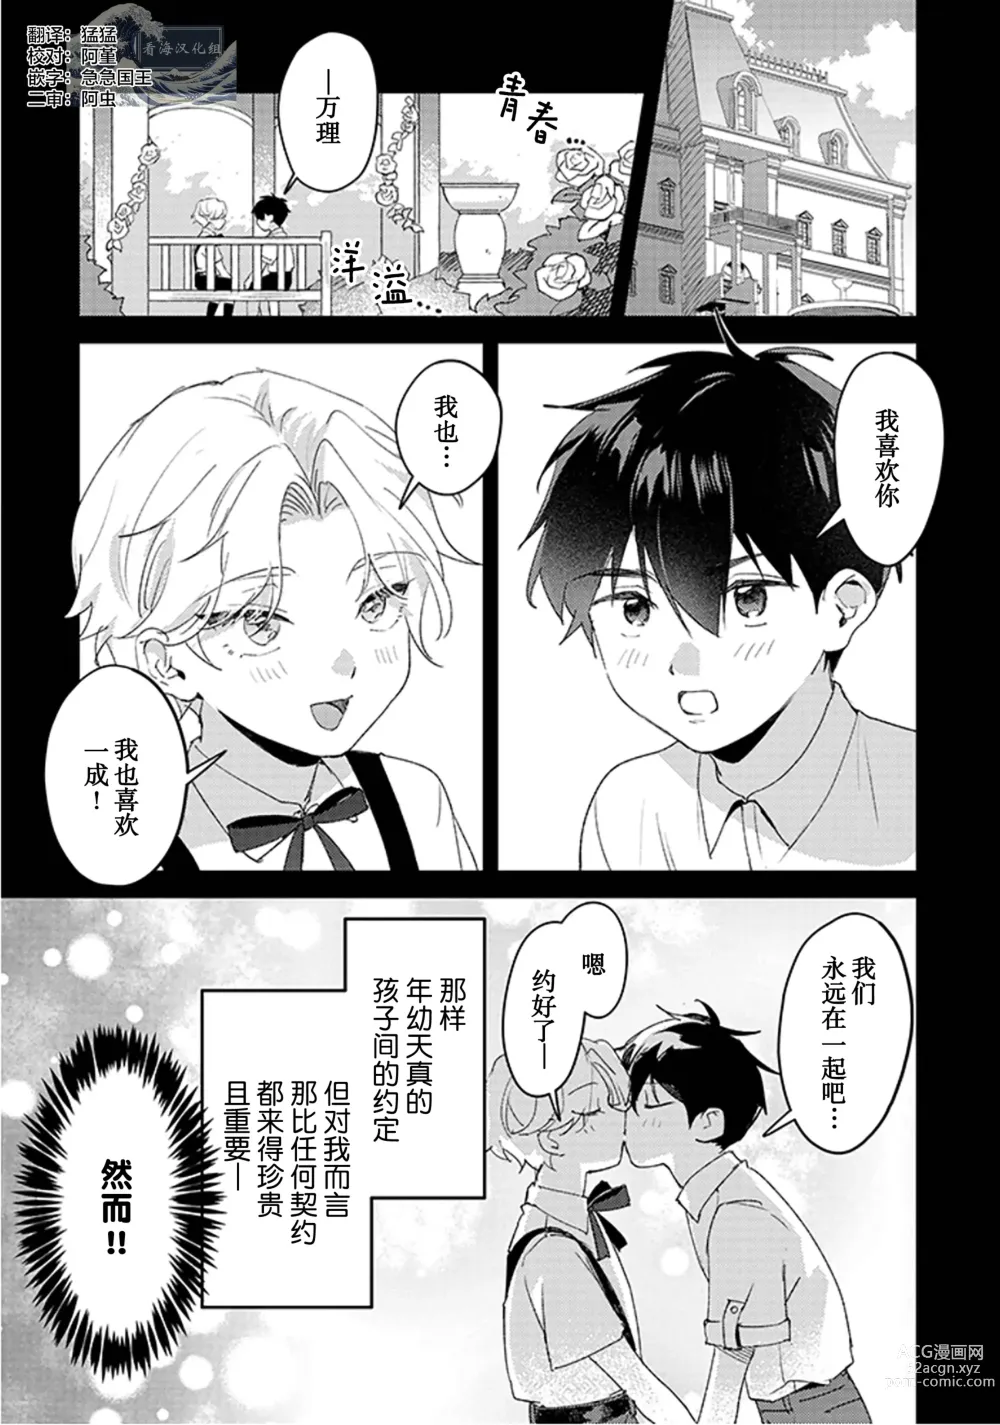 Page 2 of manga 虽然但是许诺终身的幼驯染是我的仆从!?